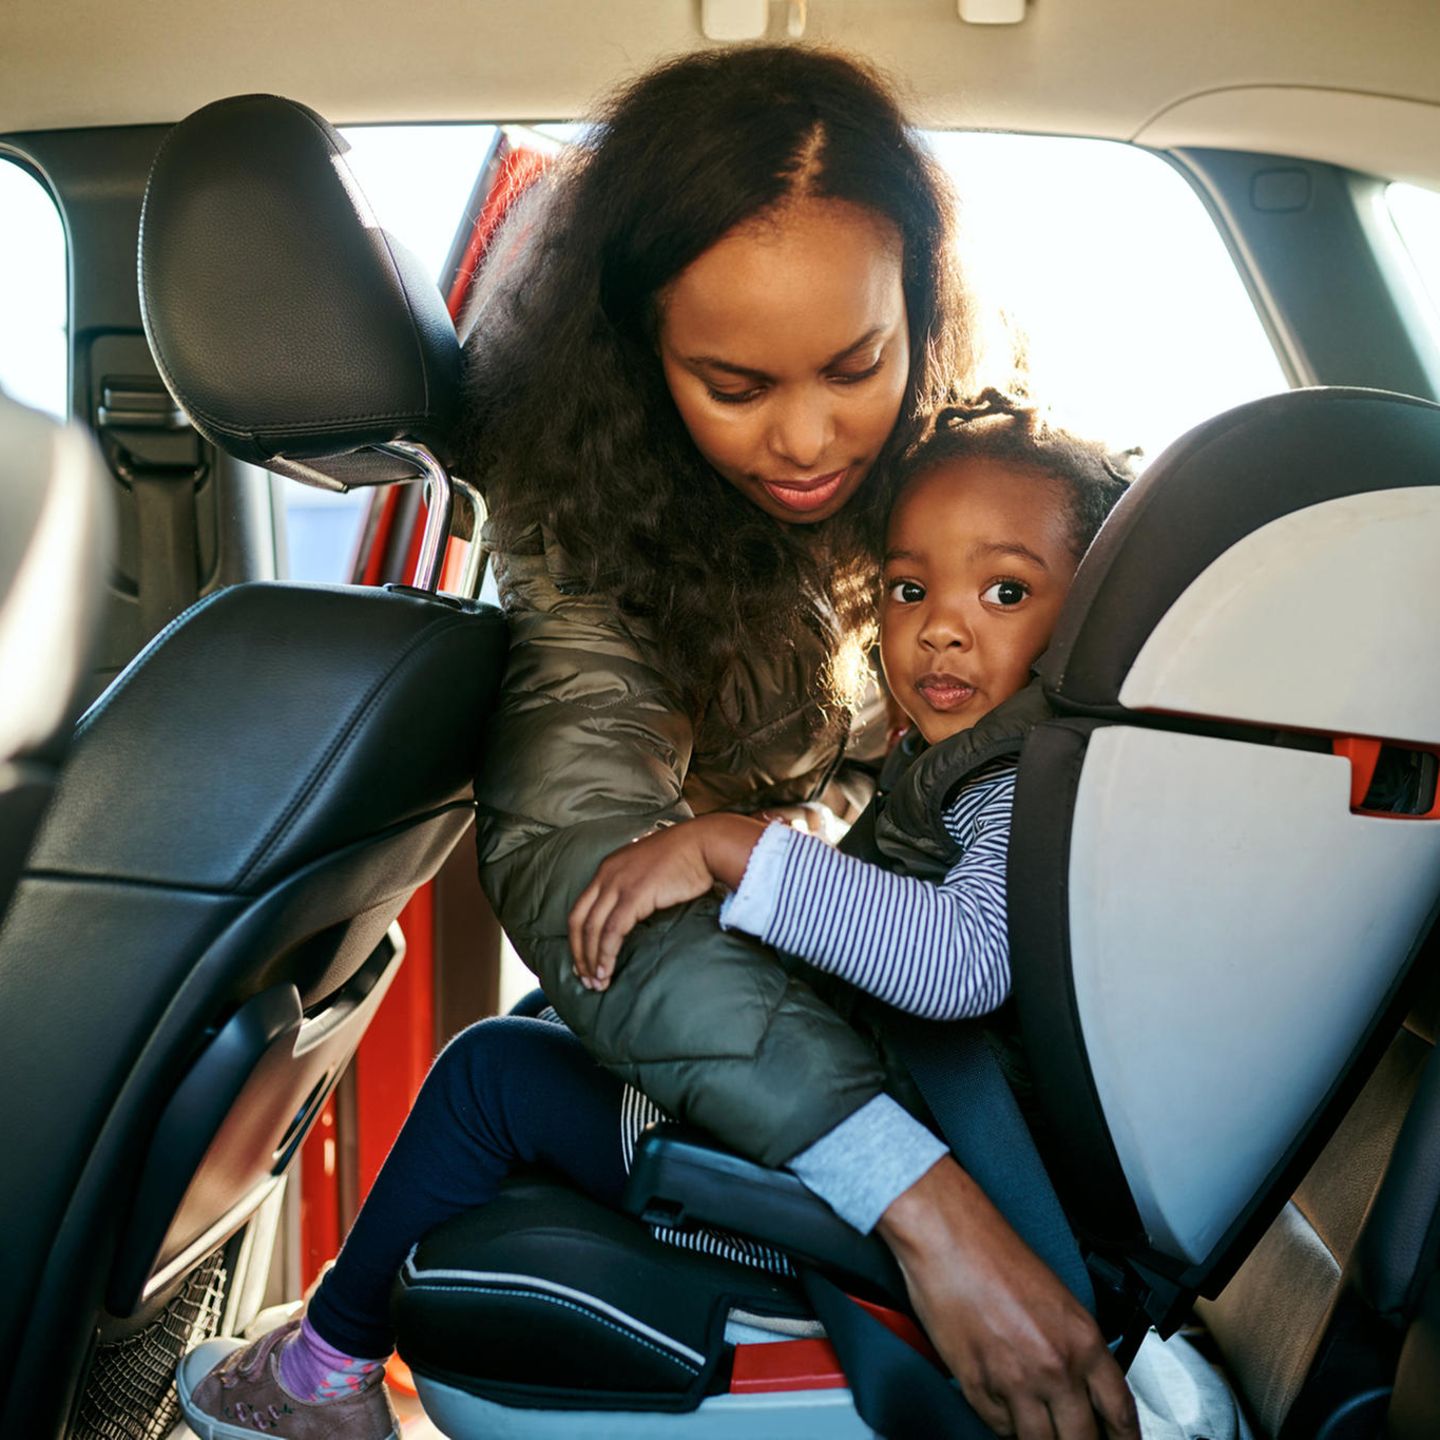 Autokindersitze - ist Ihr Kind im Auto wirklich sicher?